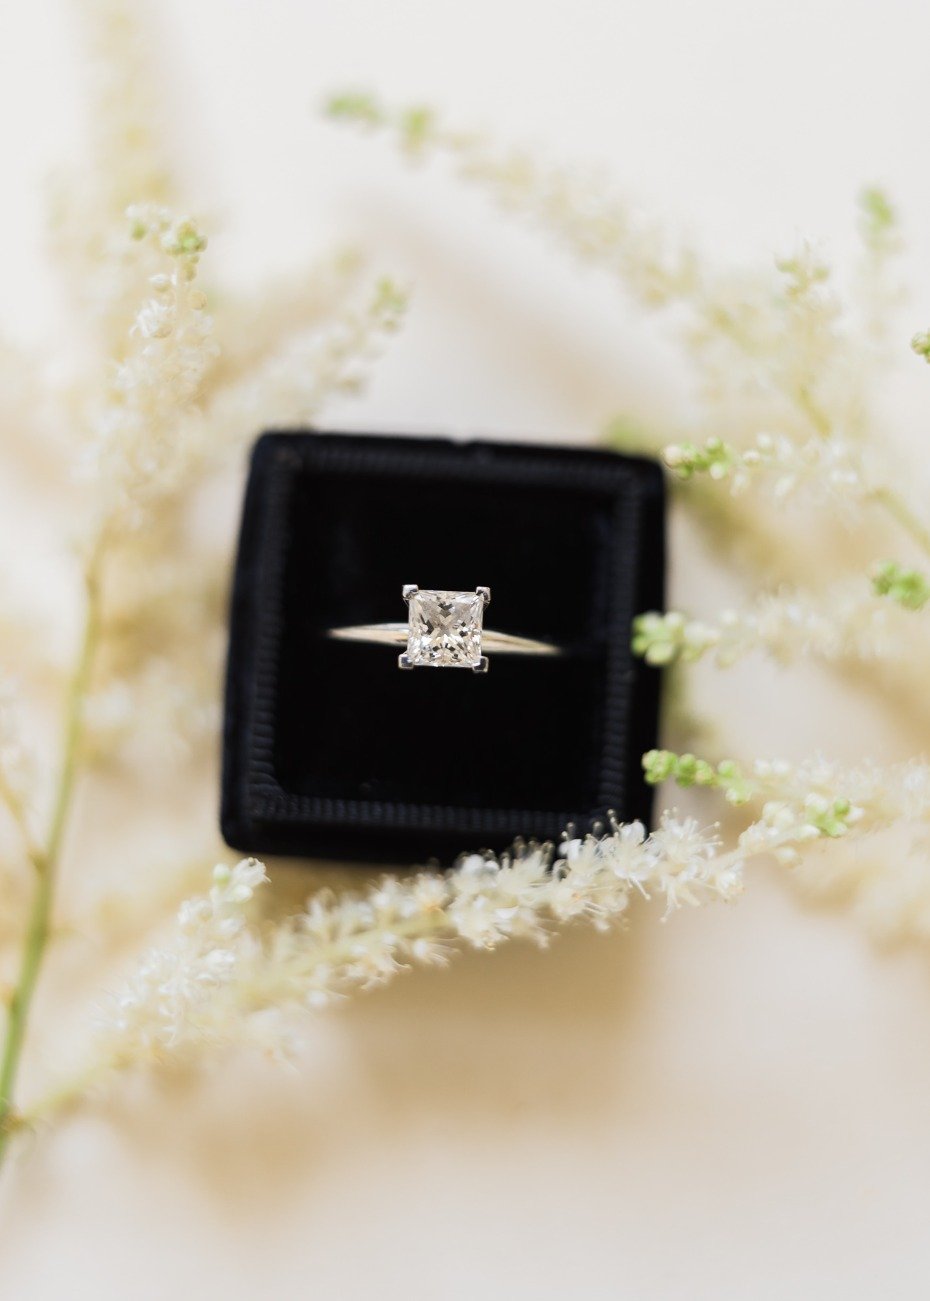 Tiffany & Co. wedding ring